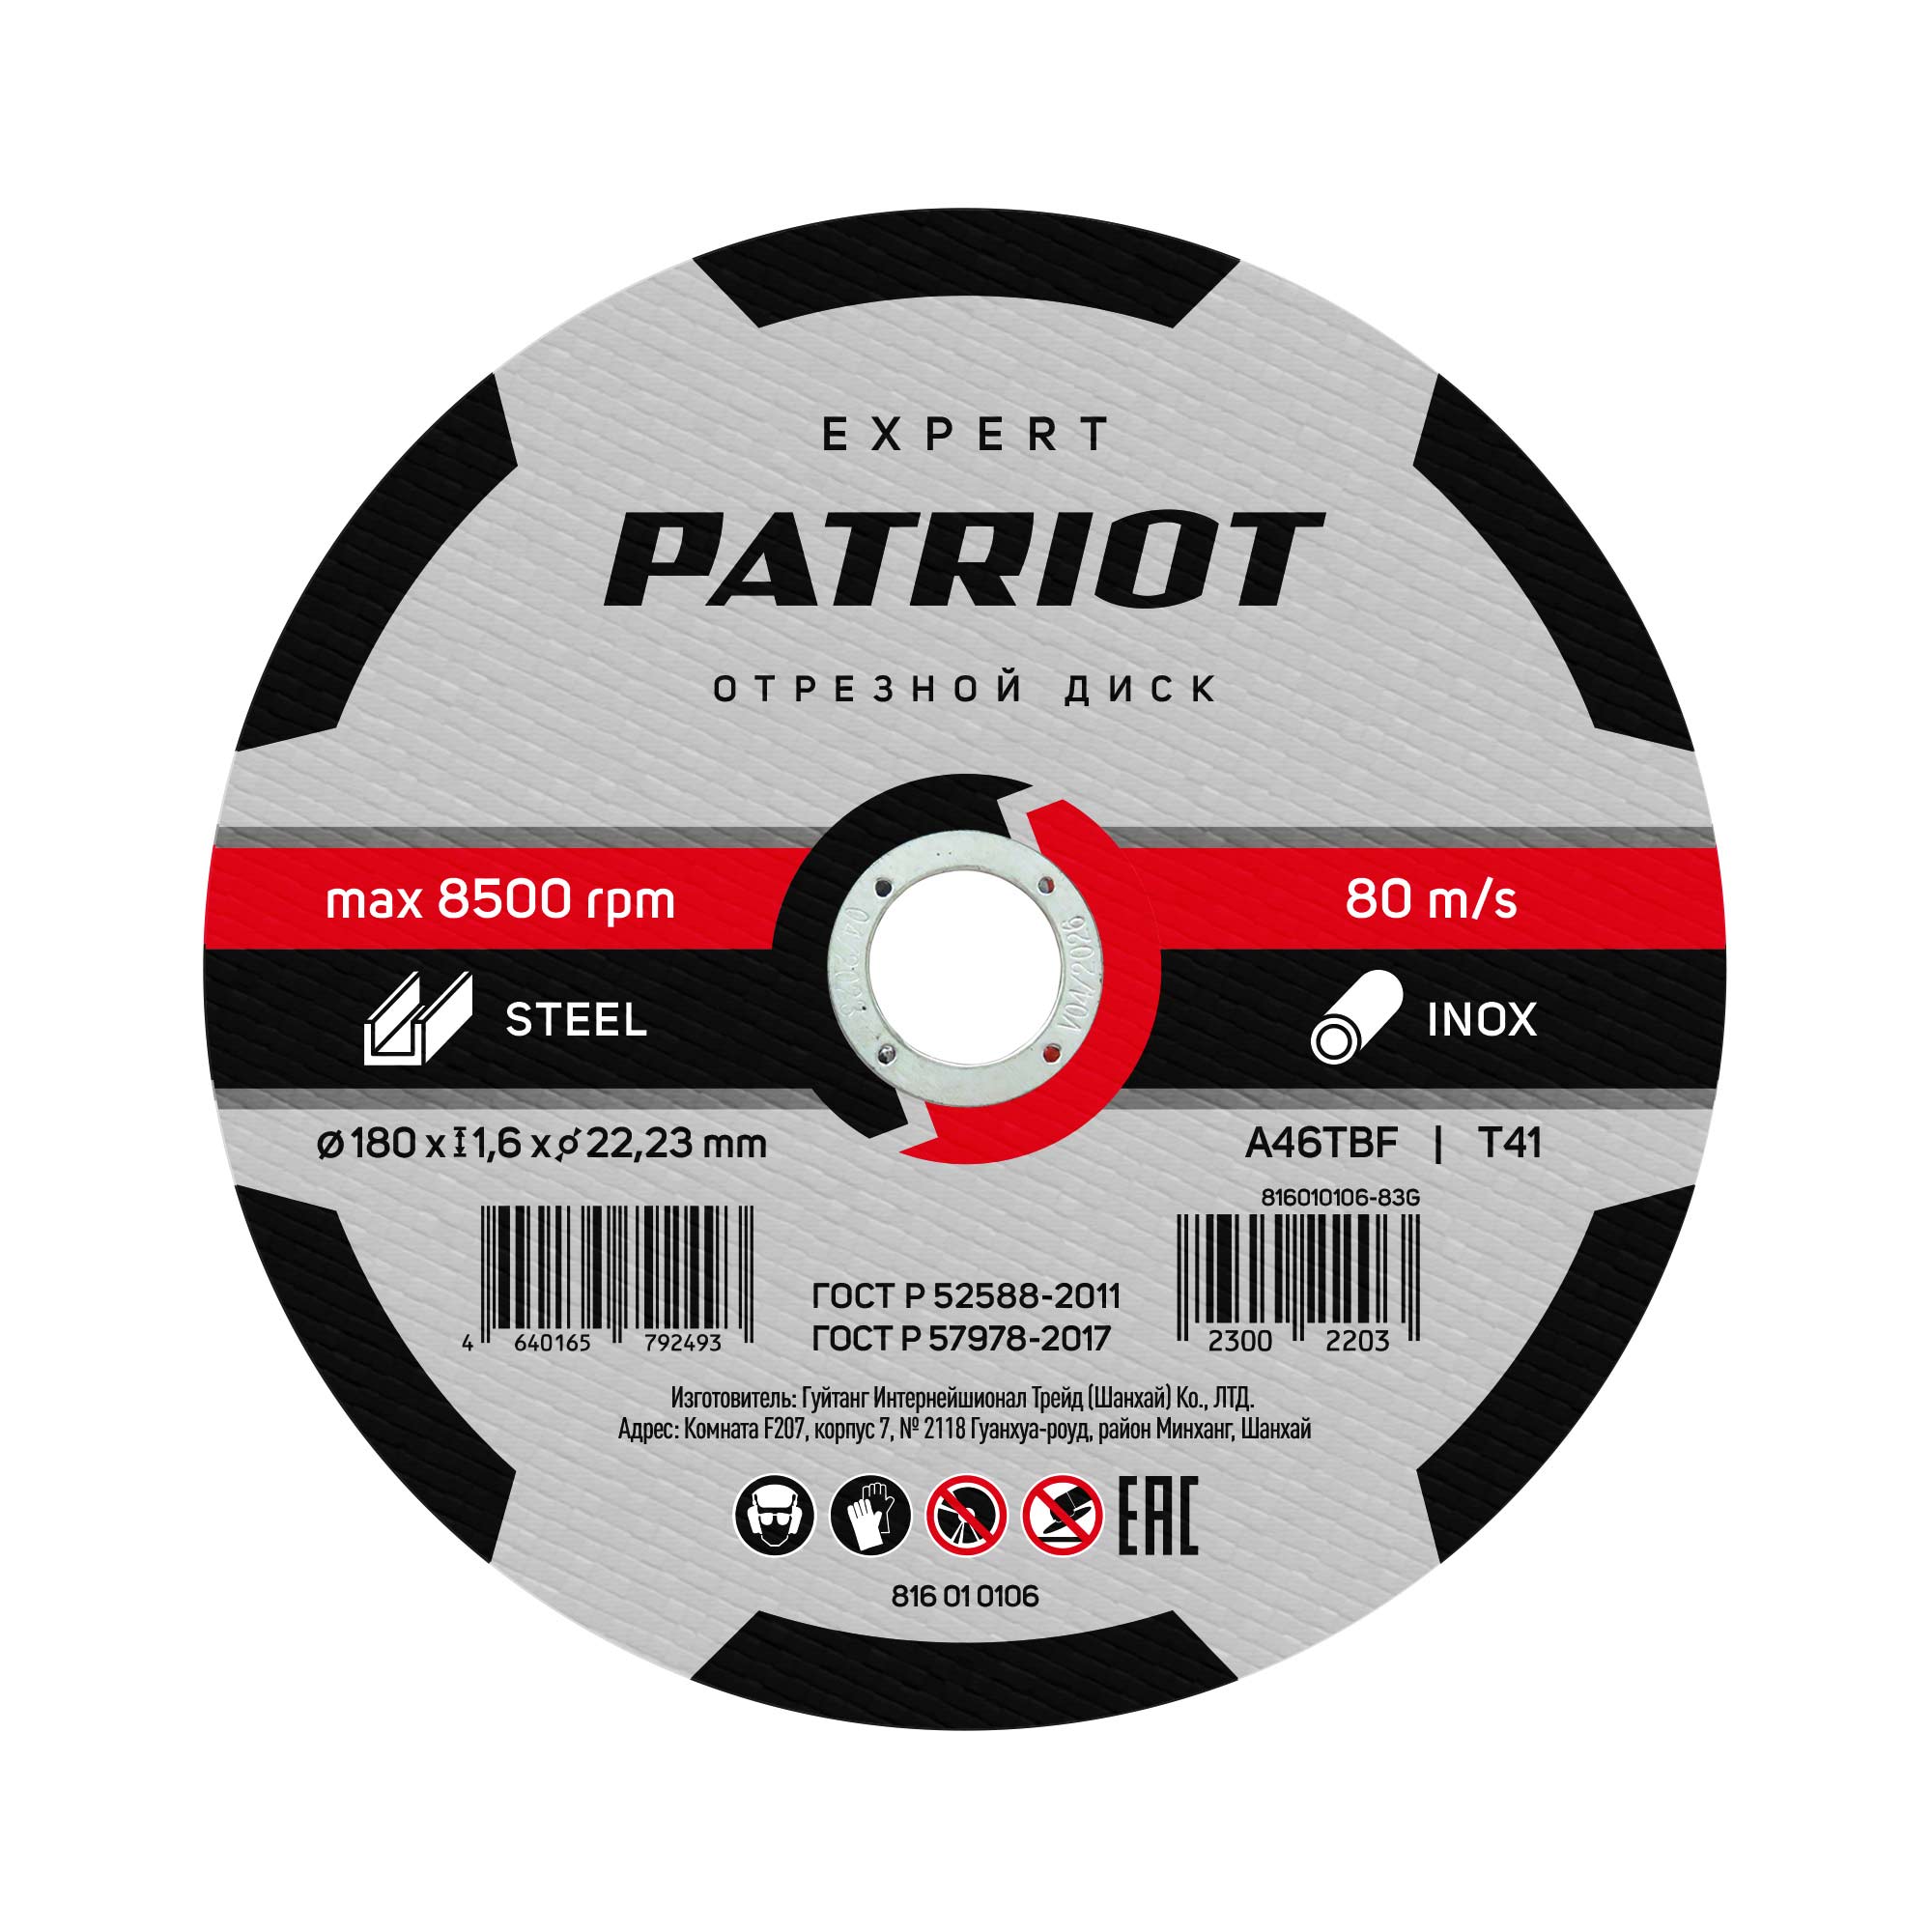 Диск PATRIOT Expert 816010106 абразивный по металлу, 180мм